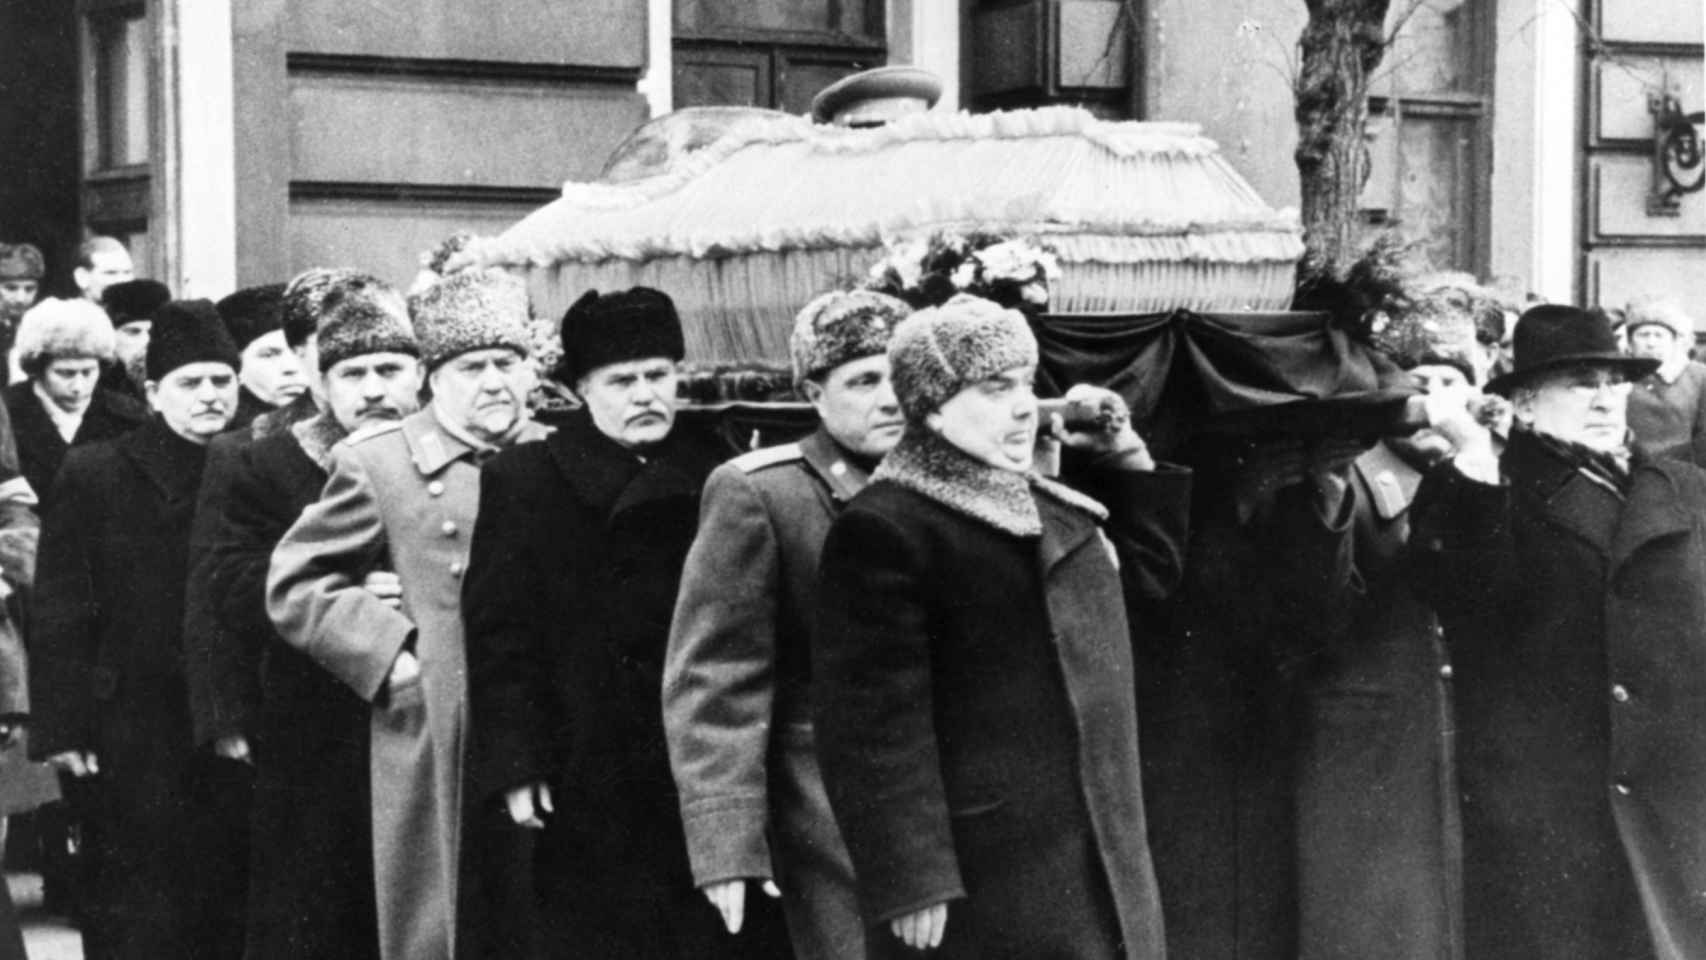 Funeral de Stalin el 9 de marzo de 1953. De derecha a izquierda, Beria, Malenkov, Vasily Stalin, Molotov, Bulganin, Kaganovich y Shvernik.